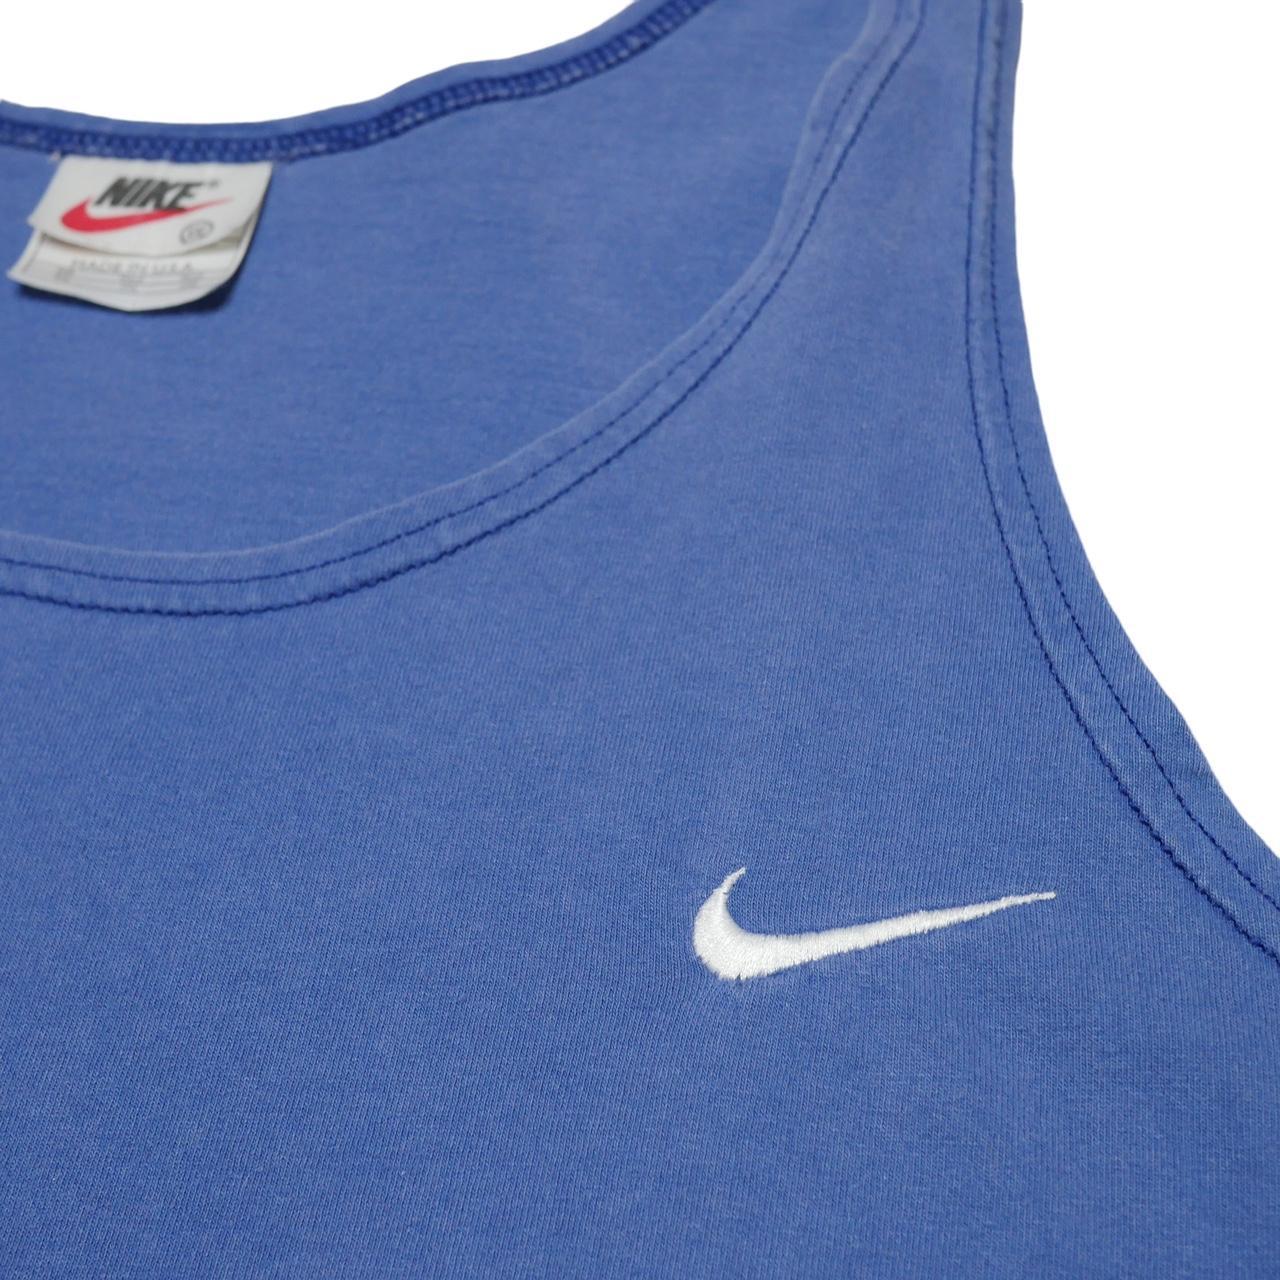 Nike Men's Blue and White Vest (2)